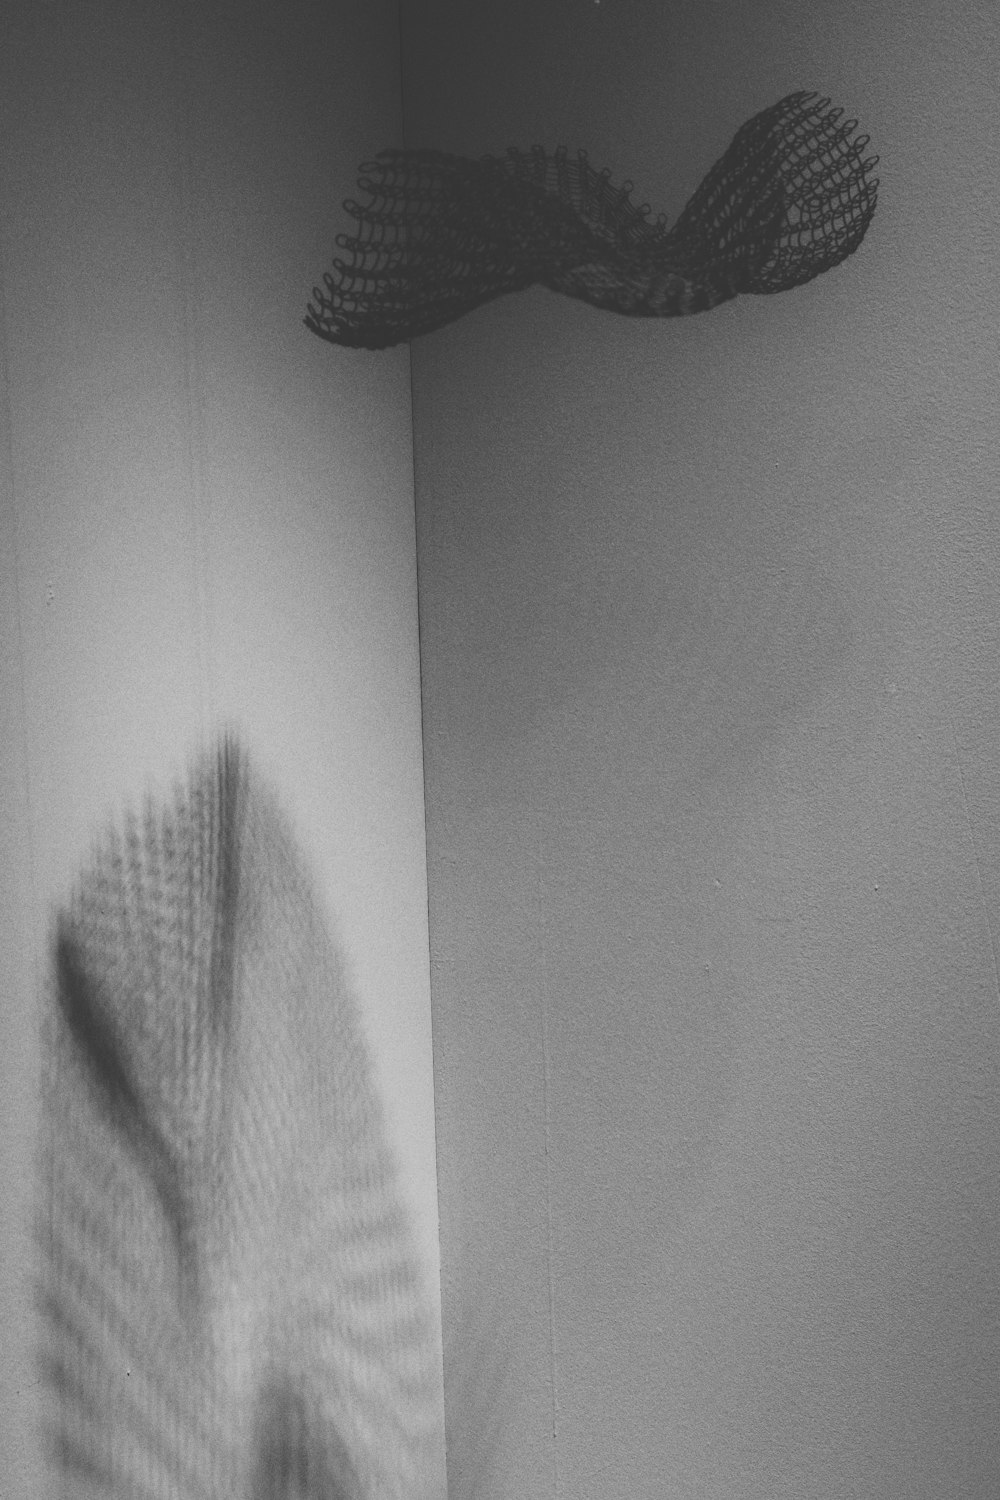 a shadow of a leaf on a wall